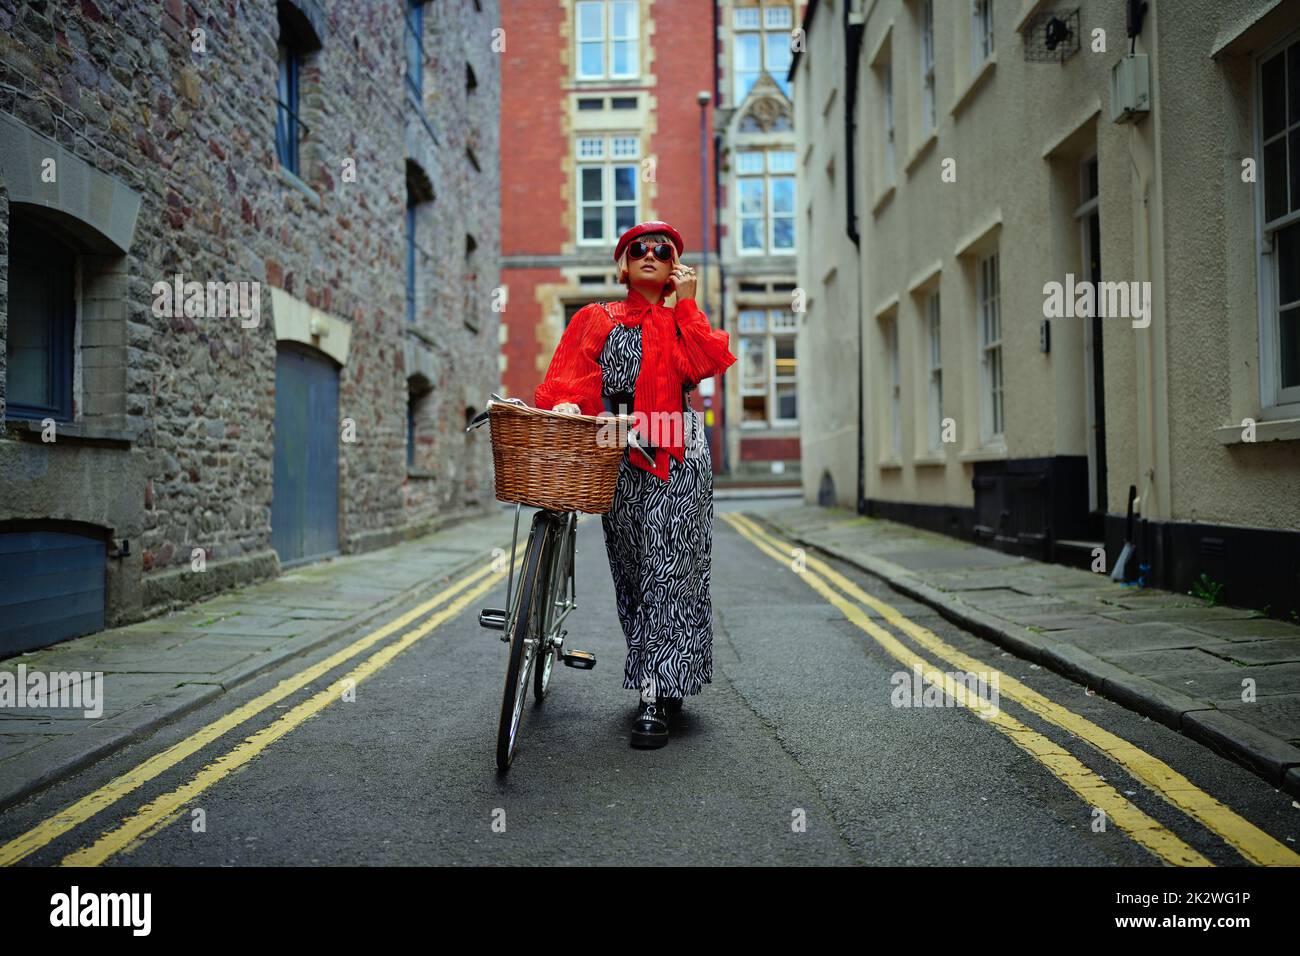 La estilista de moda sostenible Meg Cox lleva un conjunto completo de productos sostenibles de la cabeza a los pies, que incluye accesorios y su bicicleta, mientras modela en el centro de Bristol como parte de la primera semana de la moda sostenible del Reino Unido, que se celebra en todo el país. Fecha de la foto: Viernes 23 de septiembre de 2022. Foto de stock